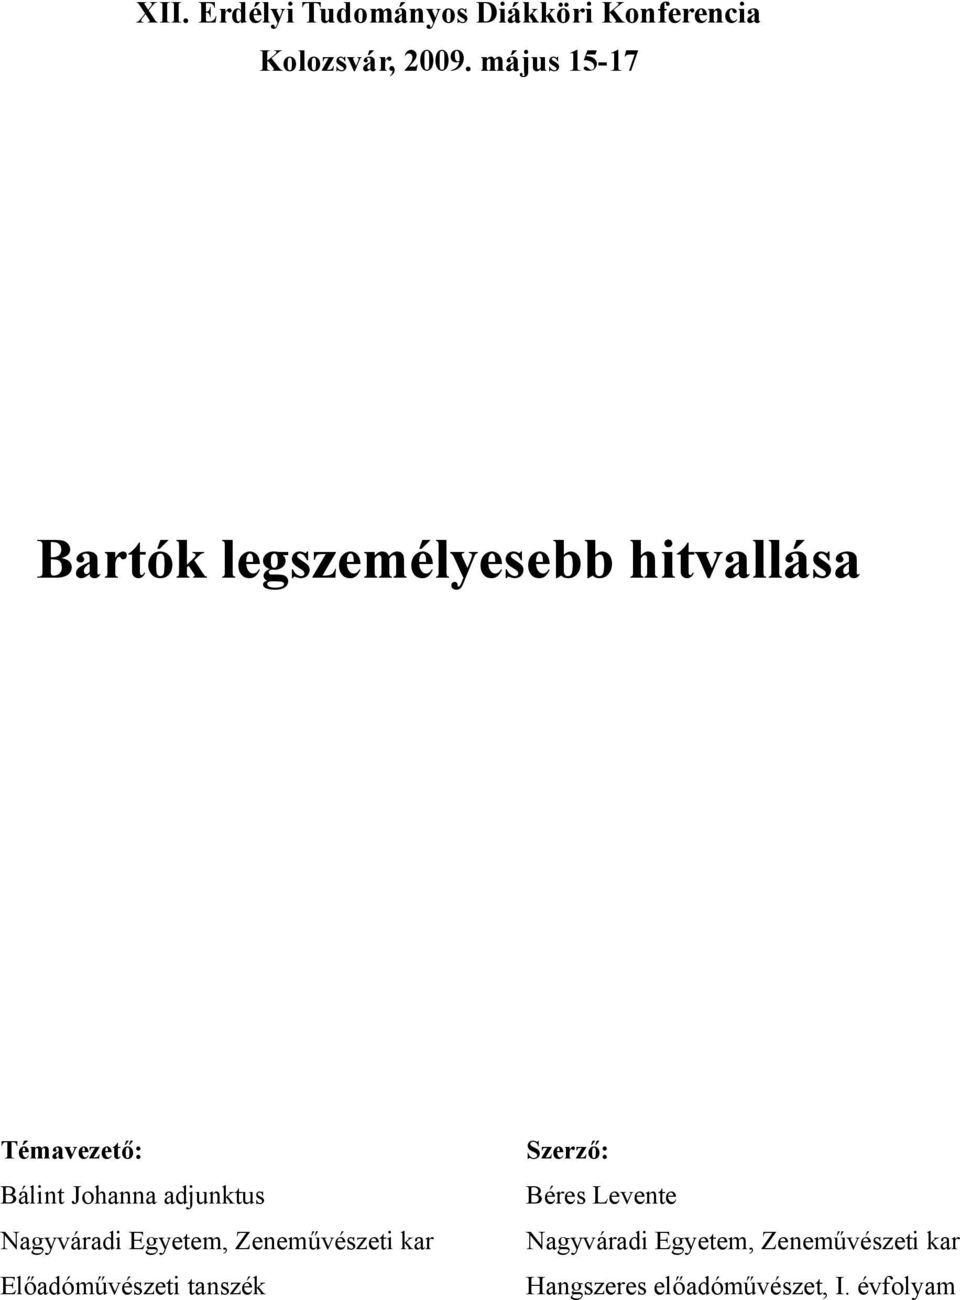 Bartók legszemélyesebb hitvallása - PDF Free Download